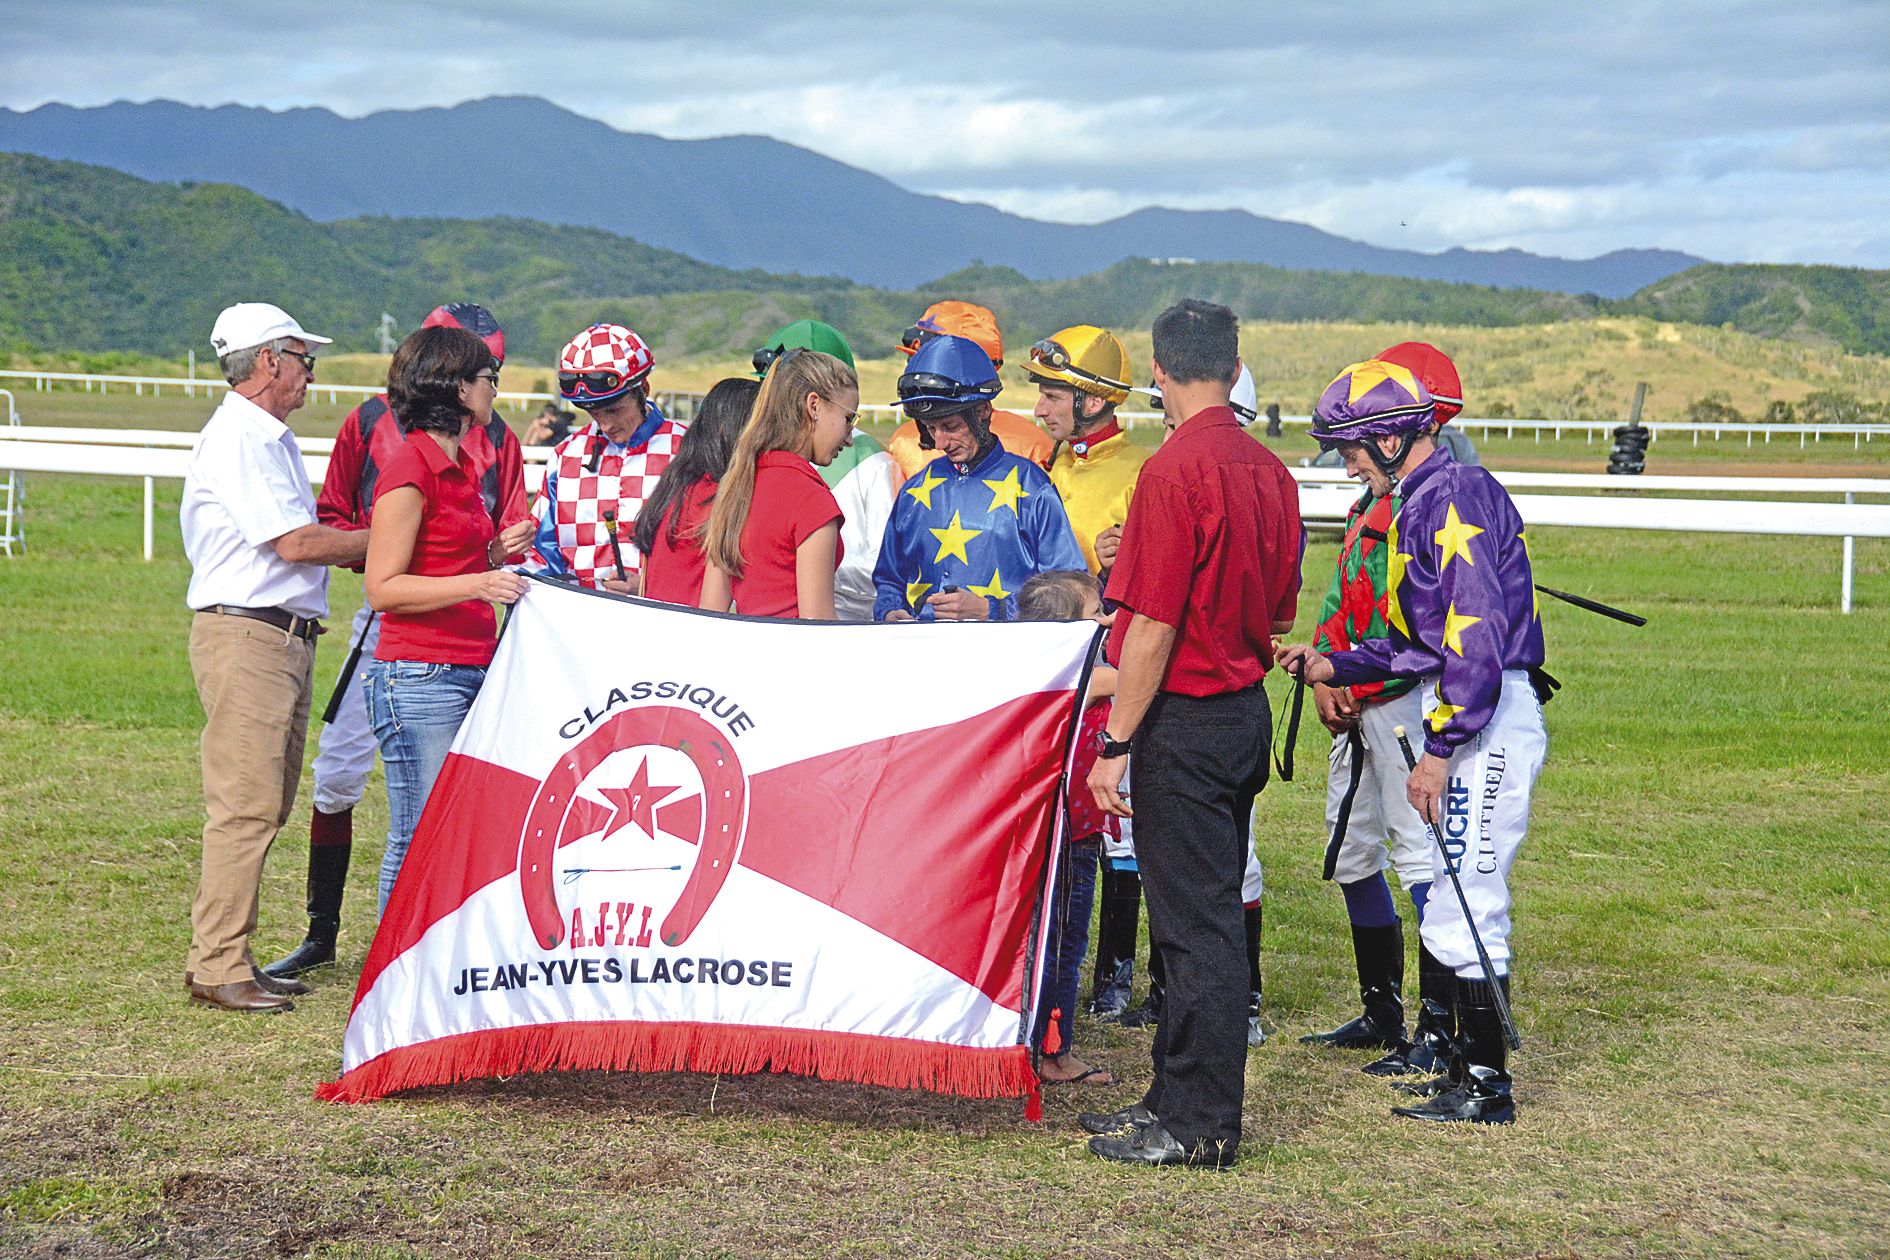 Les jockeys ont rendu hommage à Jean-Yves Lacrose, jockey calédonien décédé en 2008, avant la course.